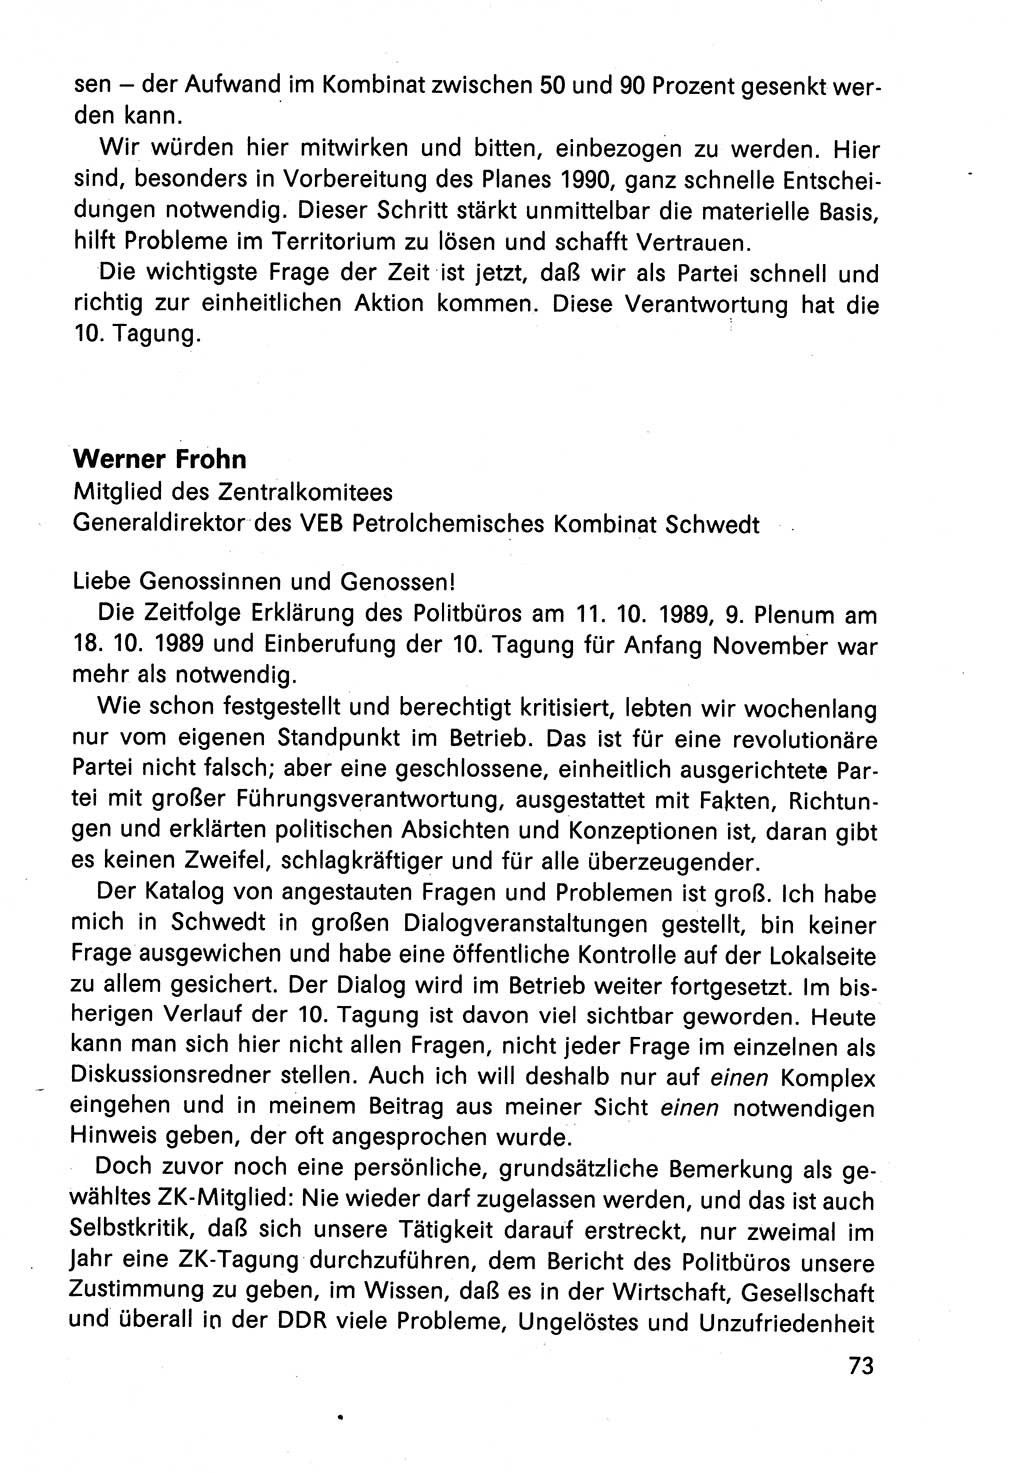 Diskussionsbeiträge, 10. Tagung des ZK (Zentralkomitee) der SED (Sozialistische Einheitspartei Deutschlands) [Deutsche Demokratische Republik (DDR)] 1989, Seite 73 (Disk.-Beitr. 10. Tg. ZK SED DDR 1989, S. 73)